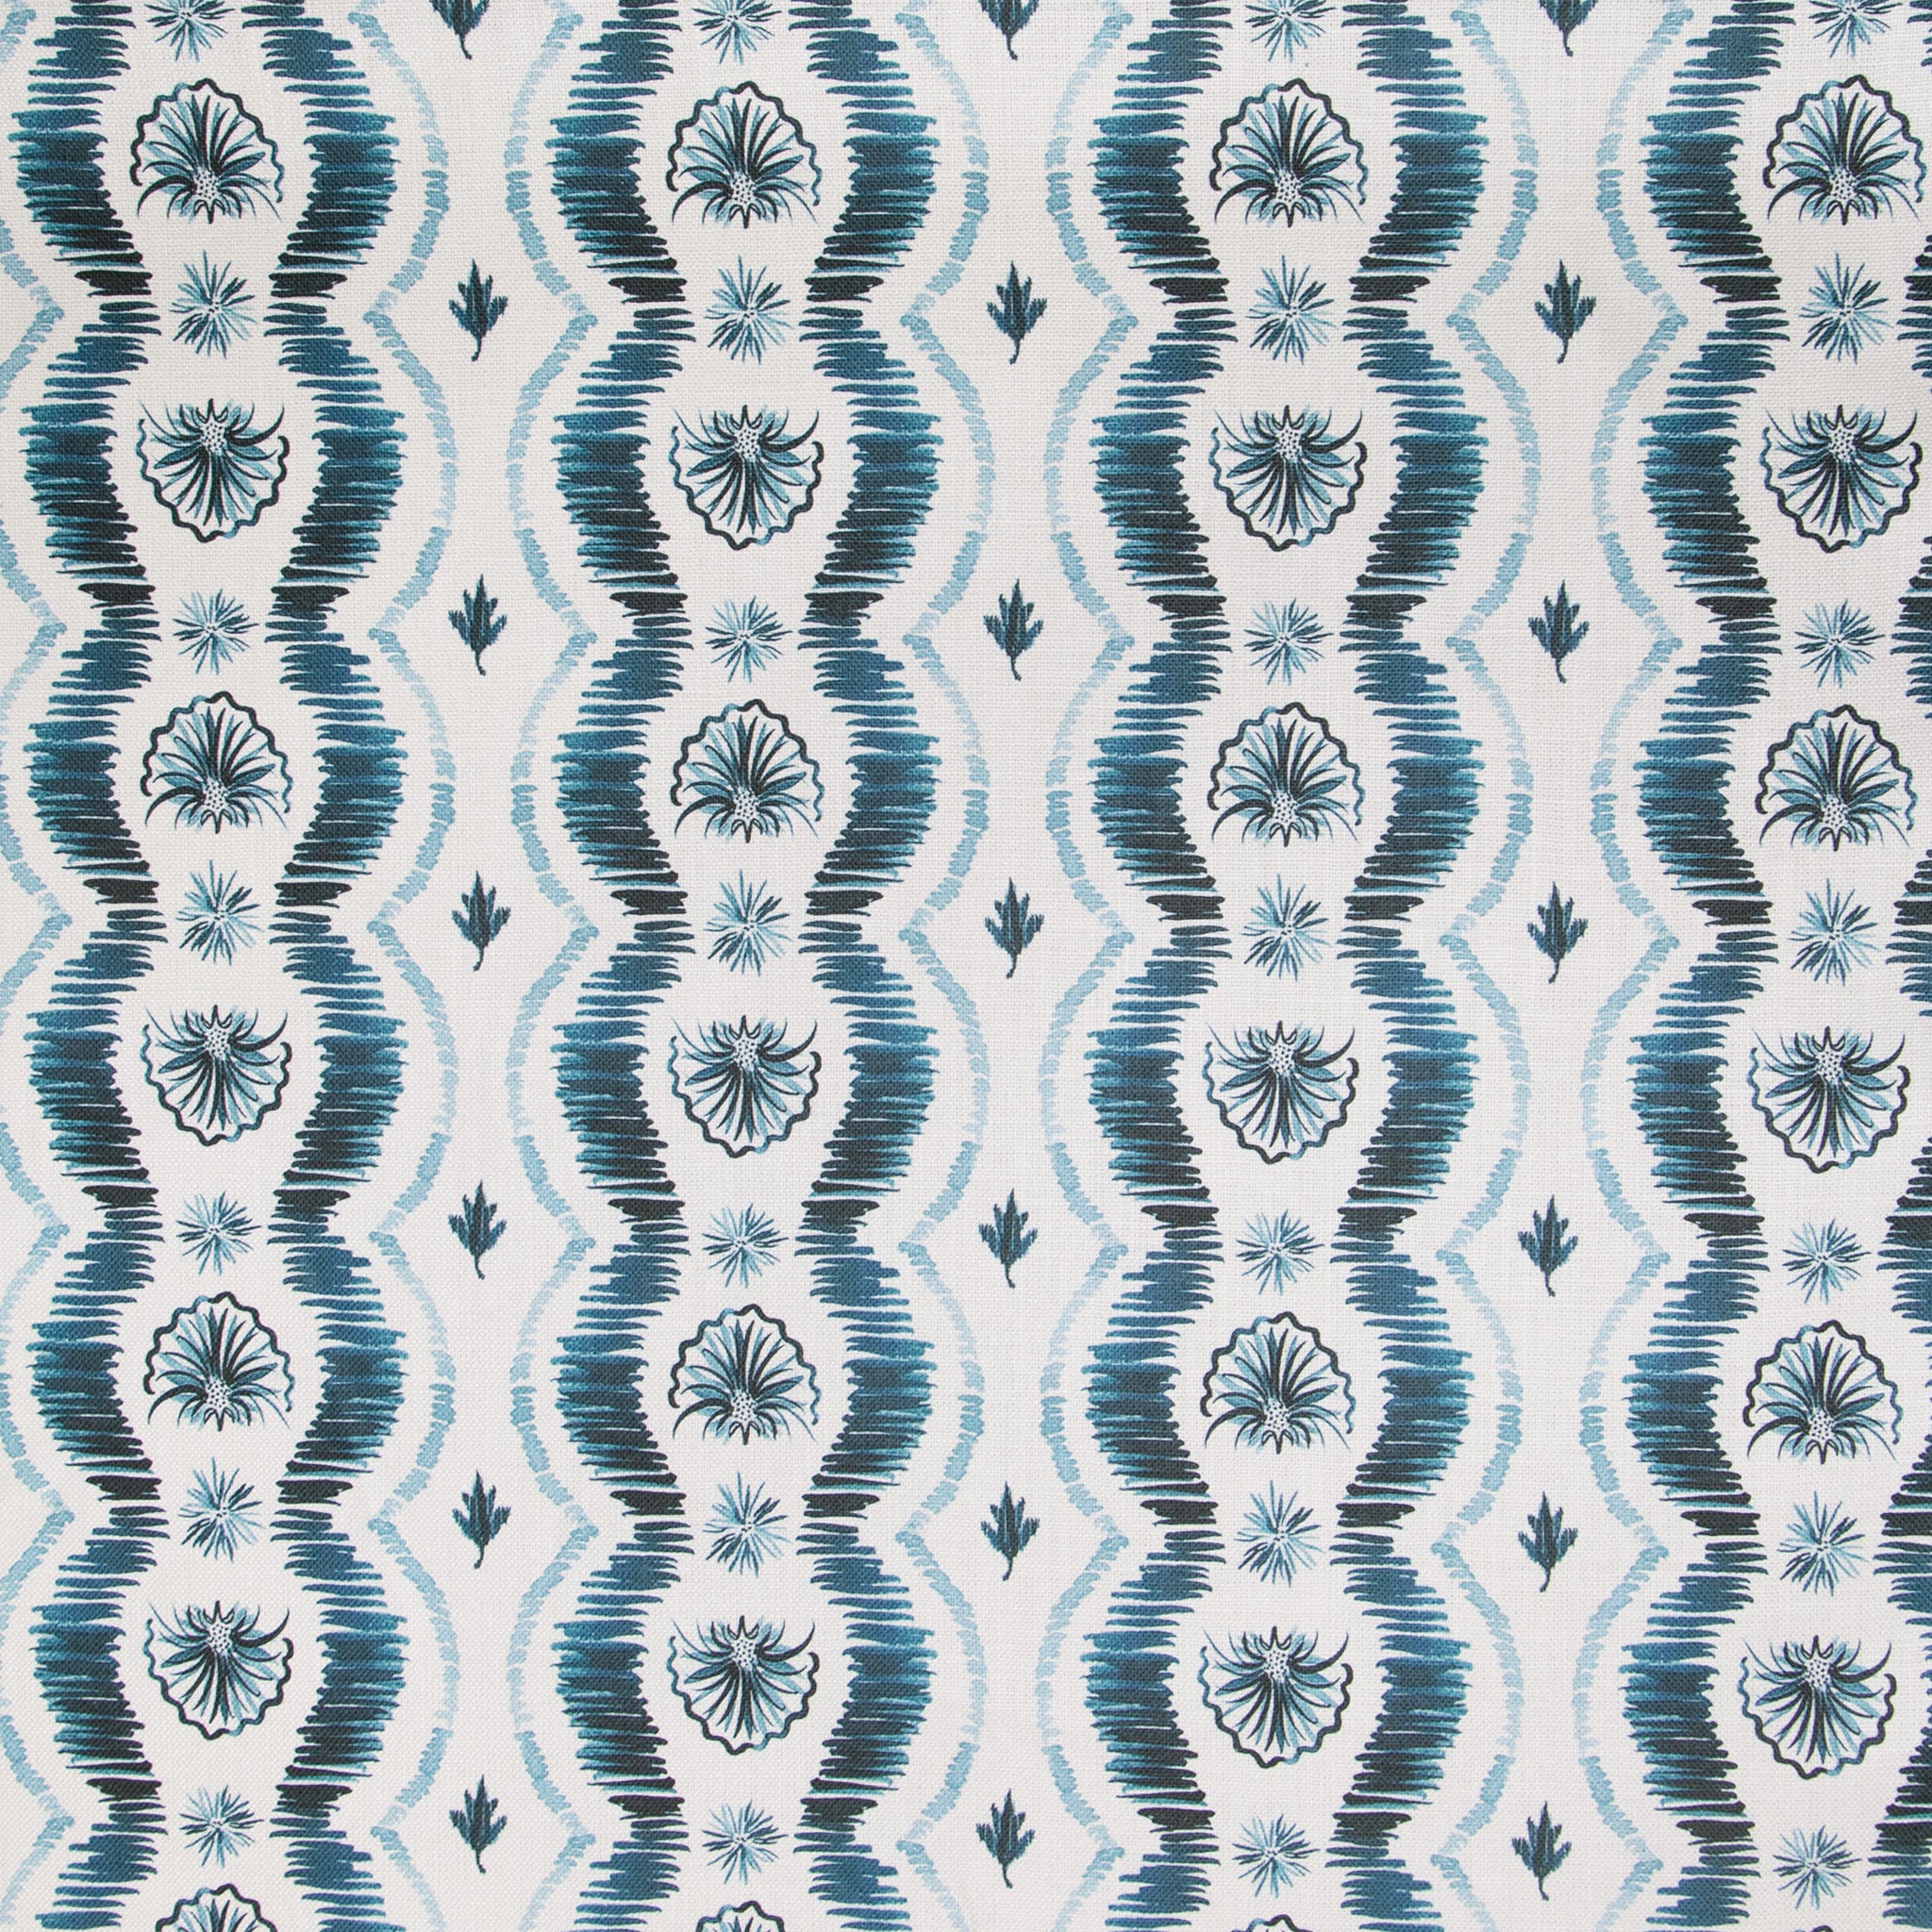 Blue Ikat Printed Heavyweight Linen Wallpaper